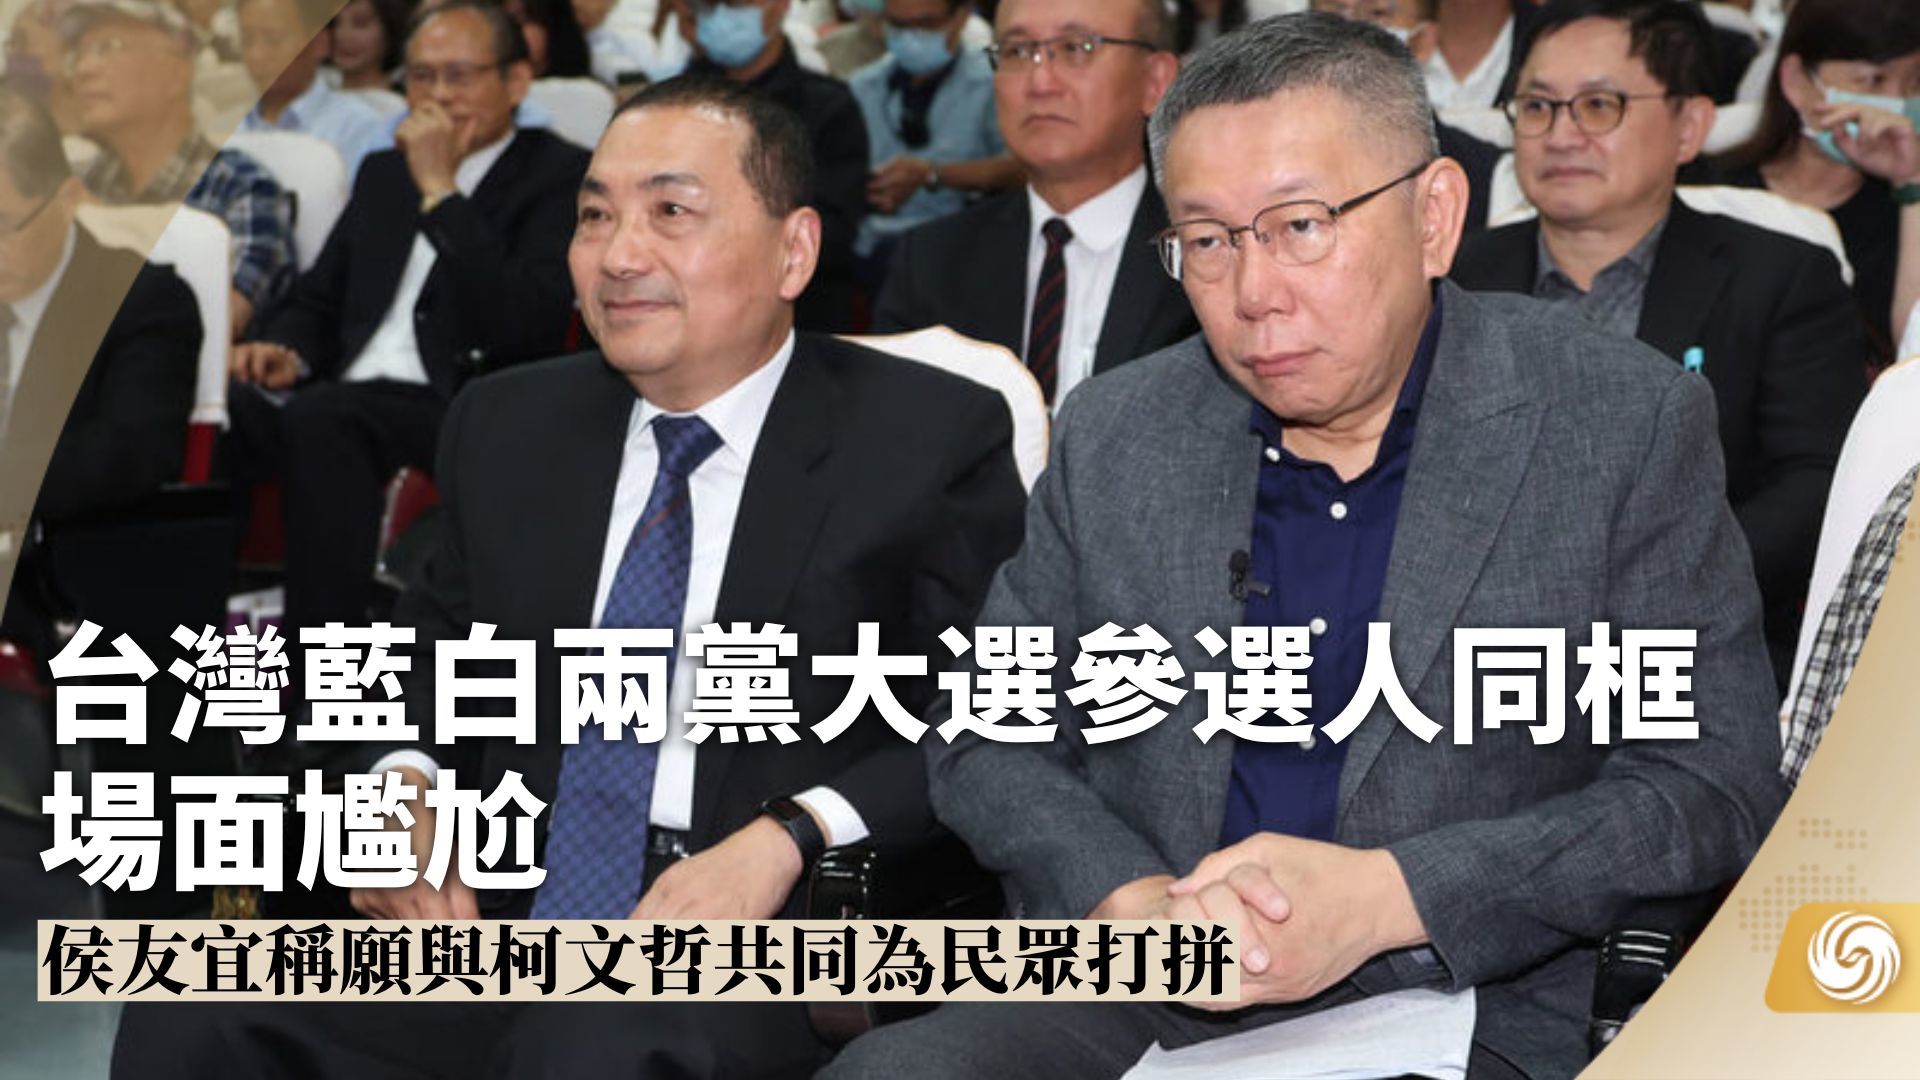 台湾蓝白两党大选参选人同框 场面尴尬